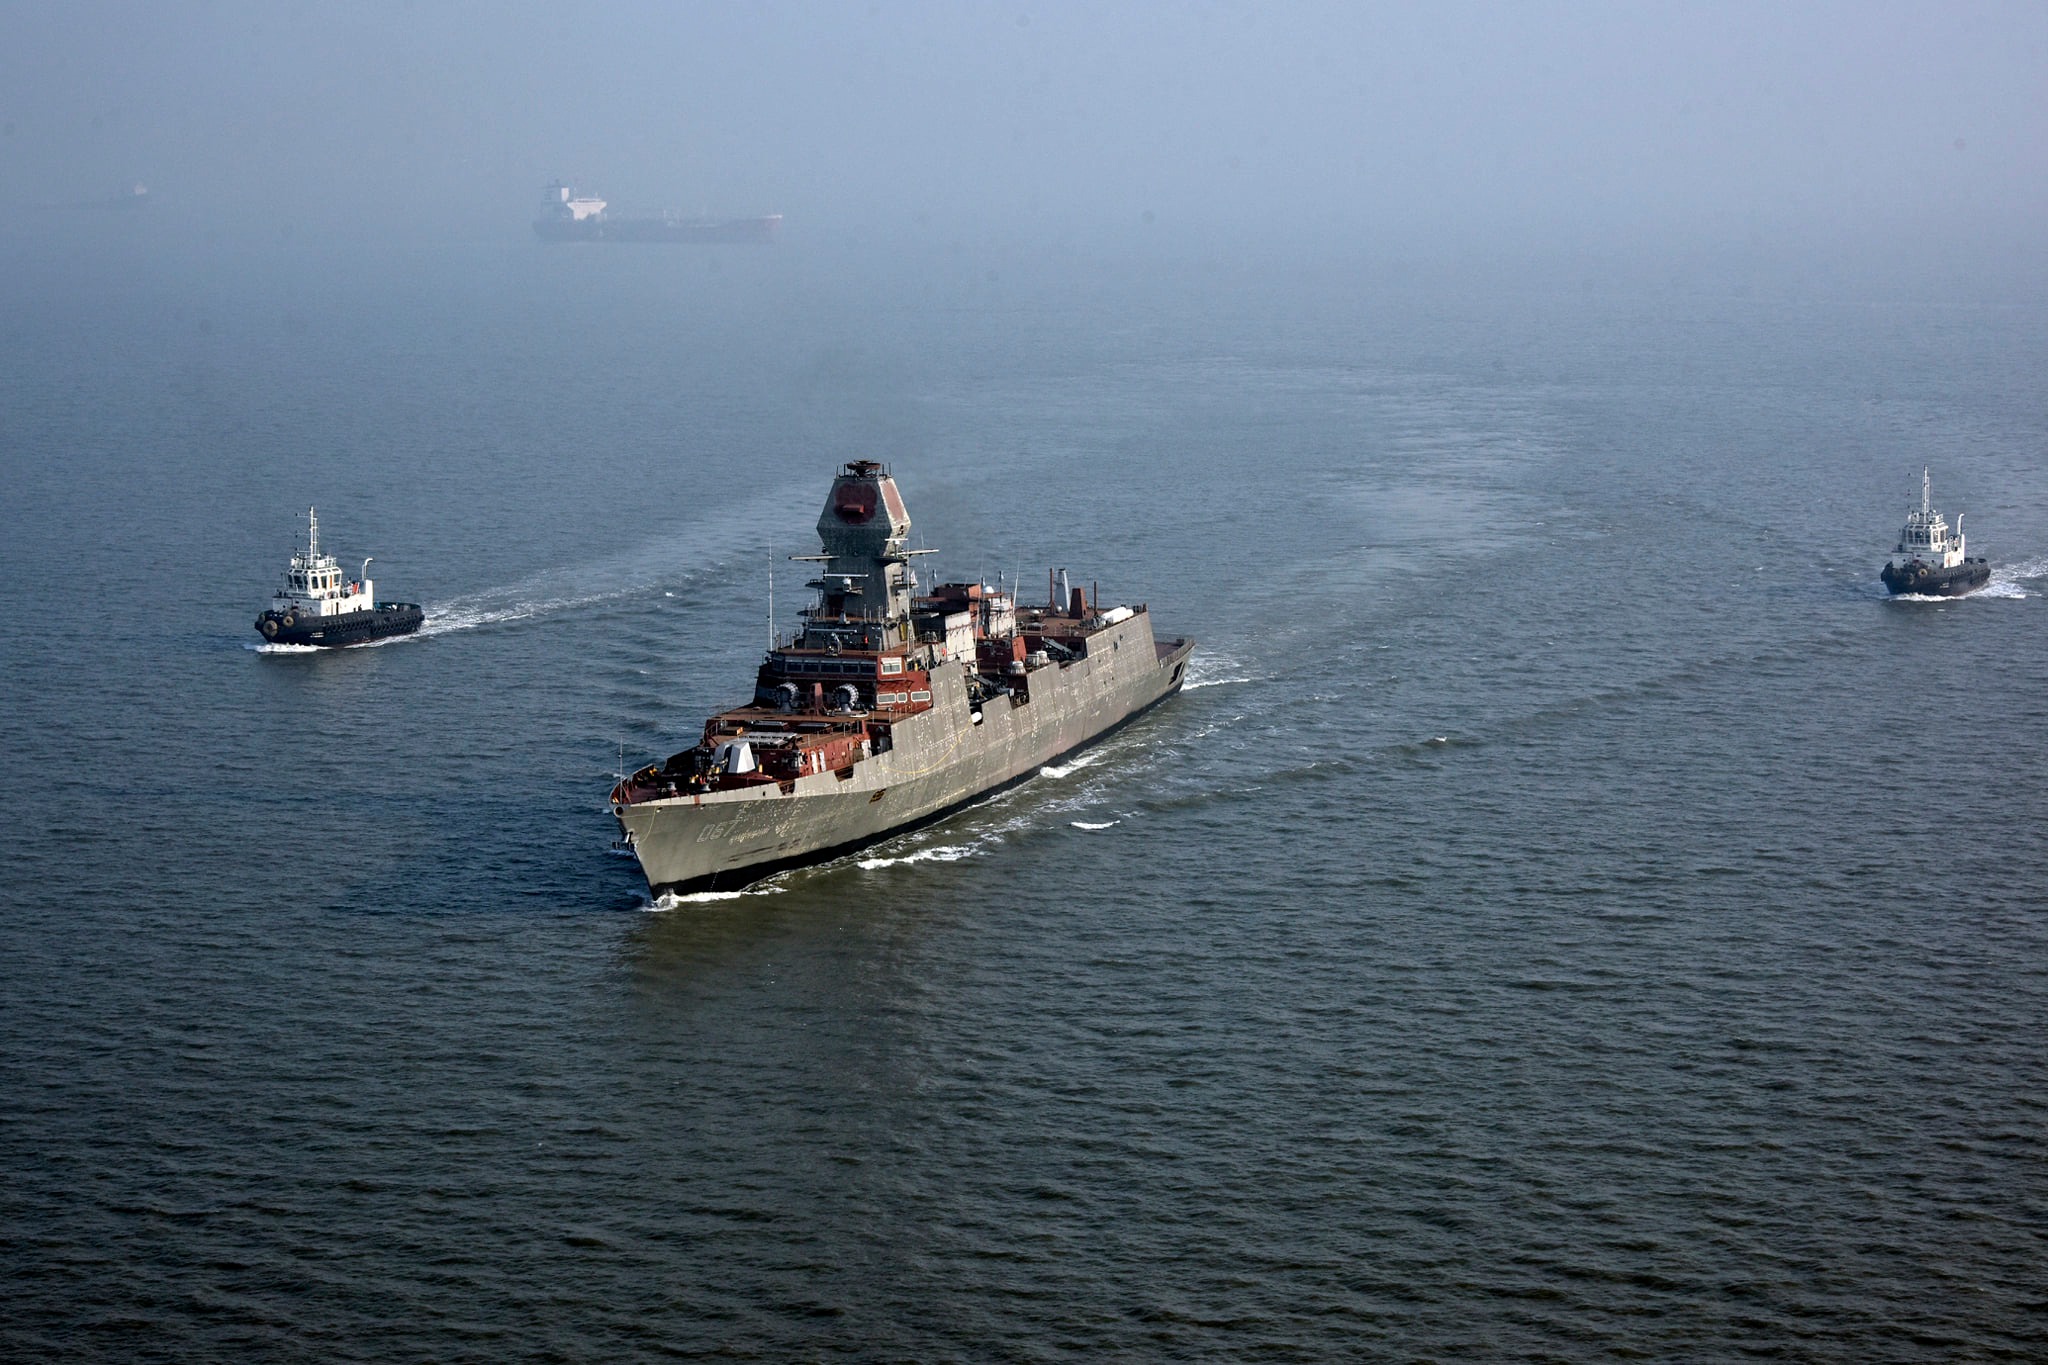 भारतीय नौसेना के नए विध्वंसक पोत का समुद्री परीक्षण शुरू